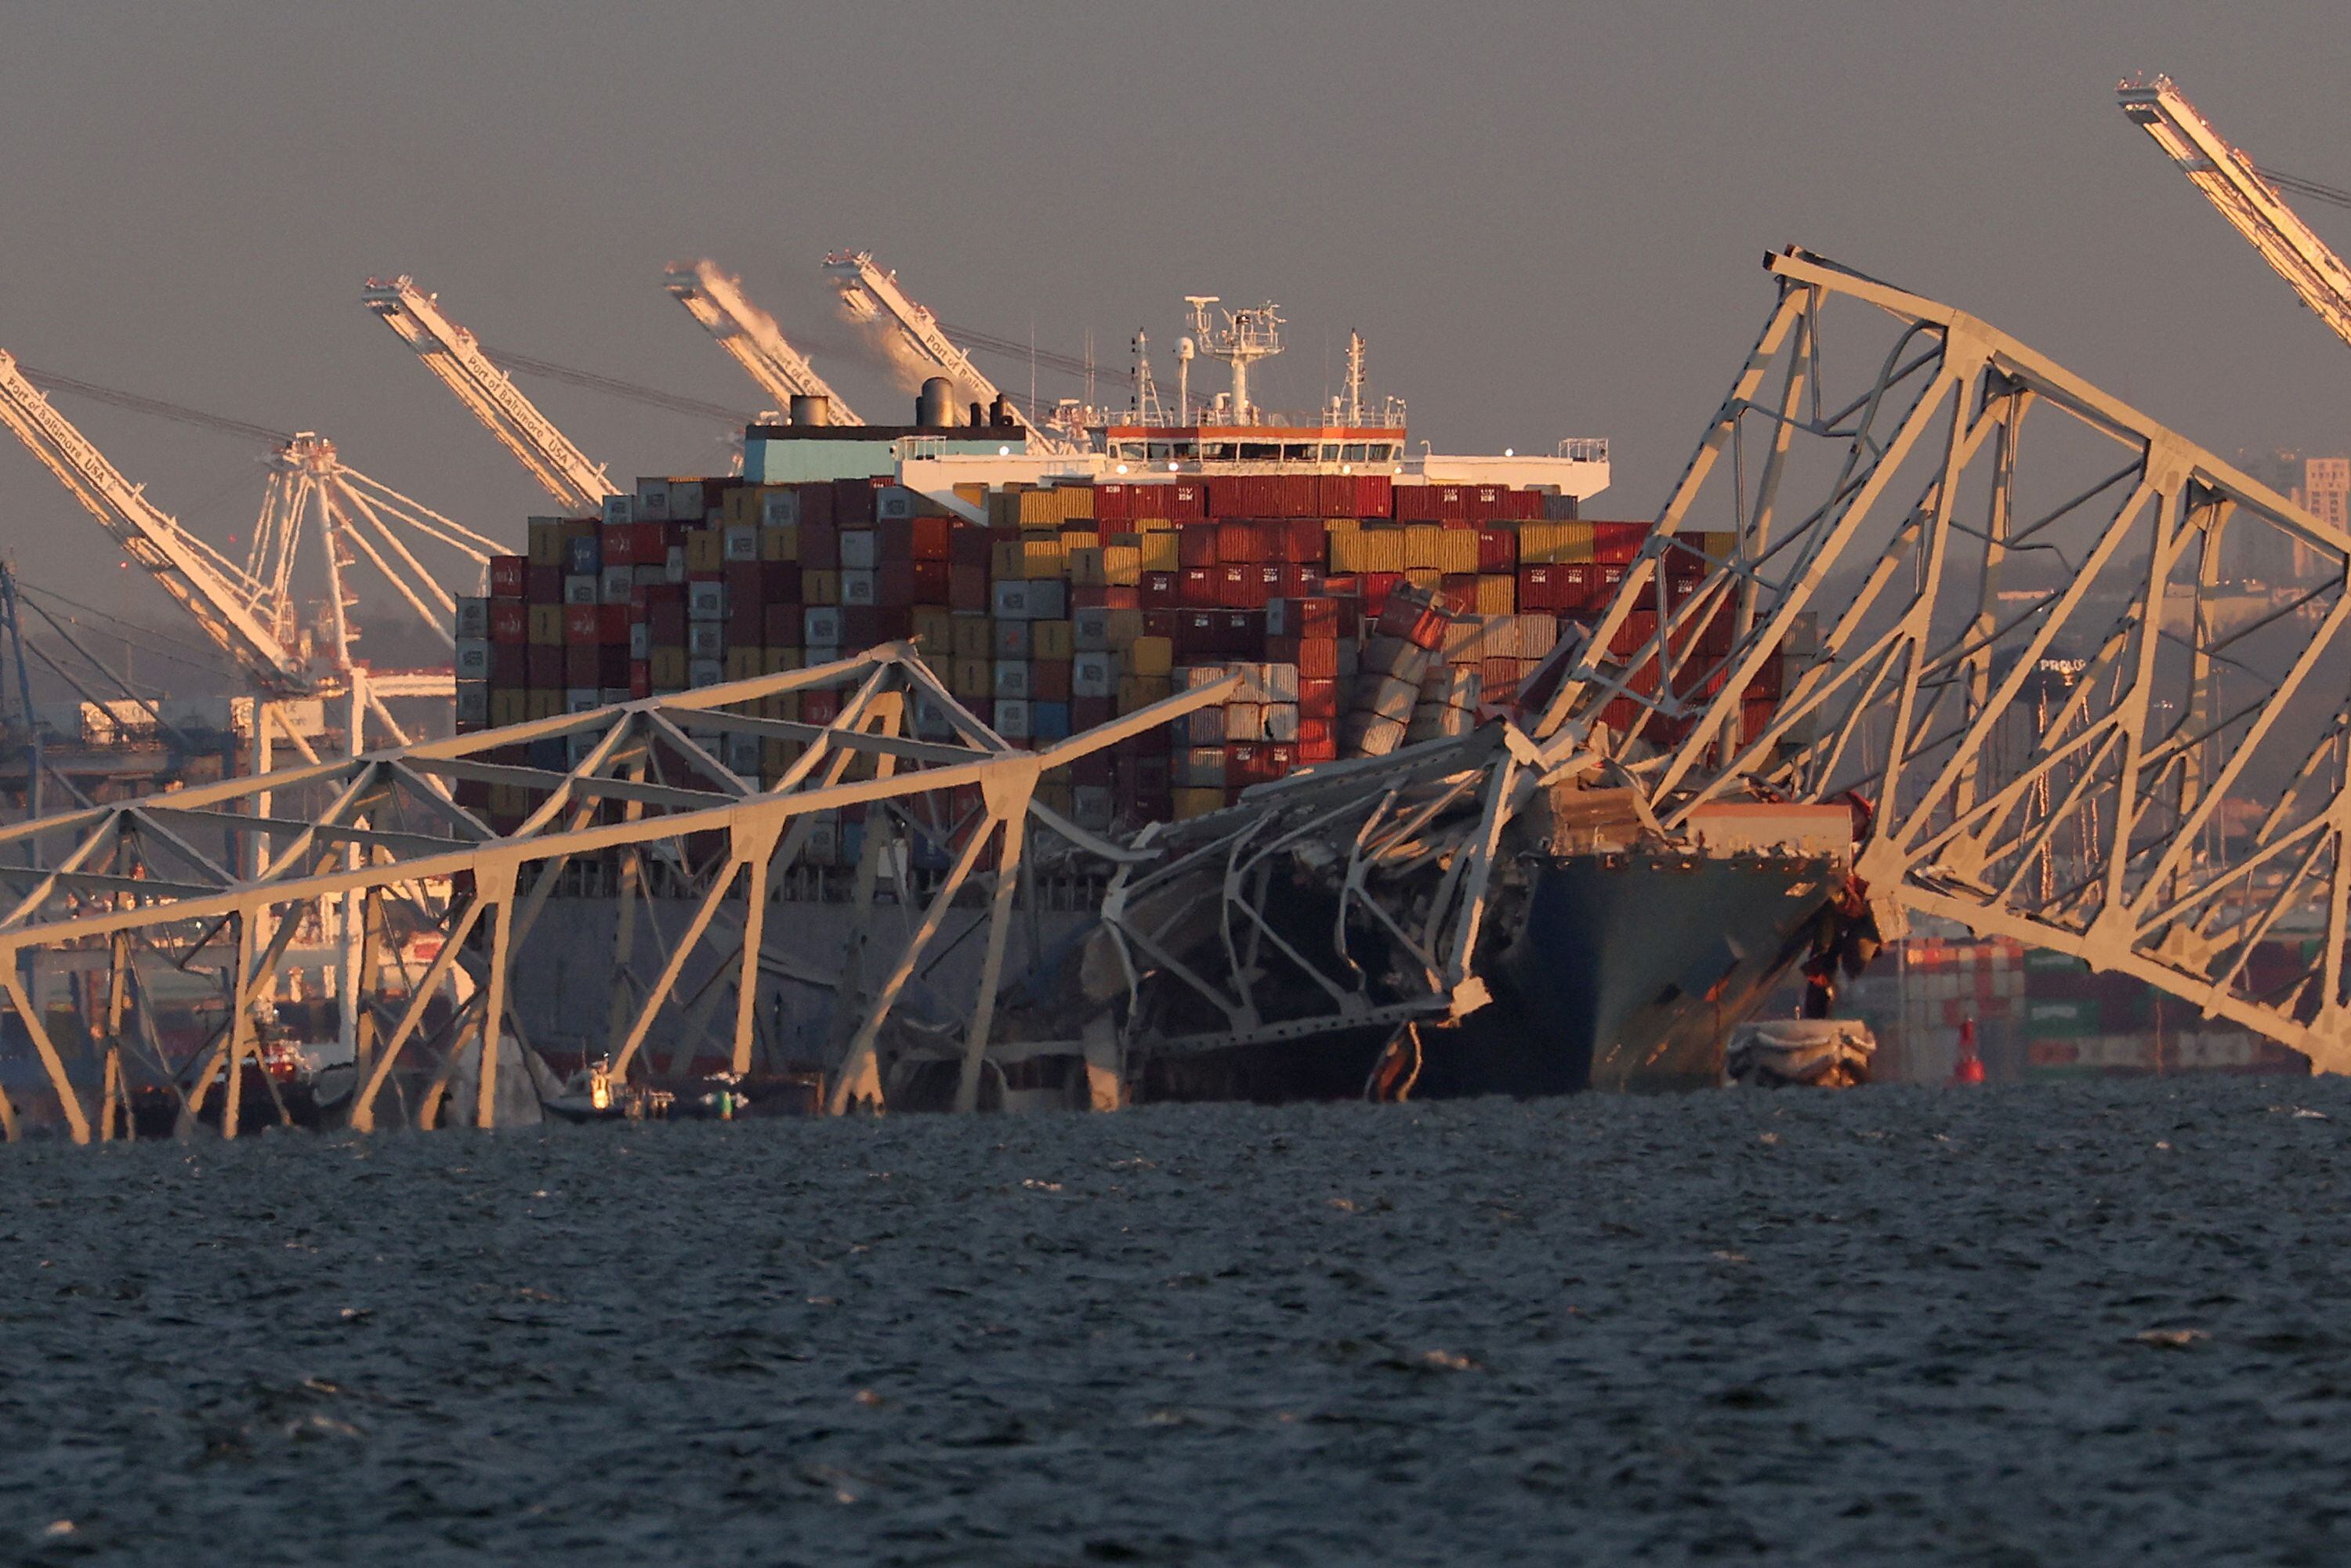 El puerto de Baltimore, que se vio afectado tras la caída del puente Francis Scott Key, es el noveno puerto en importancia de Estados Unidos, en cuanto a carga y valor de carga de mercadería extranjera movilizada, cuya actividad genera más de 15.000 empleos directos y casi 140.000 indirectos.

